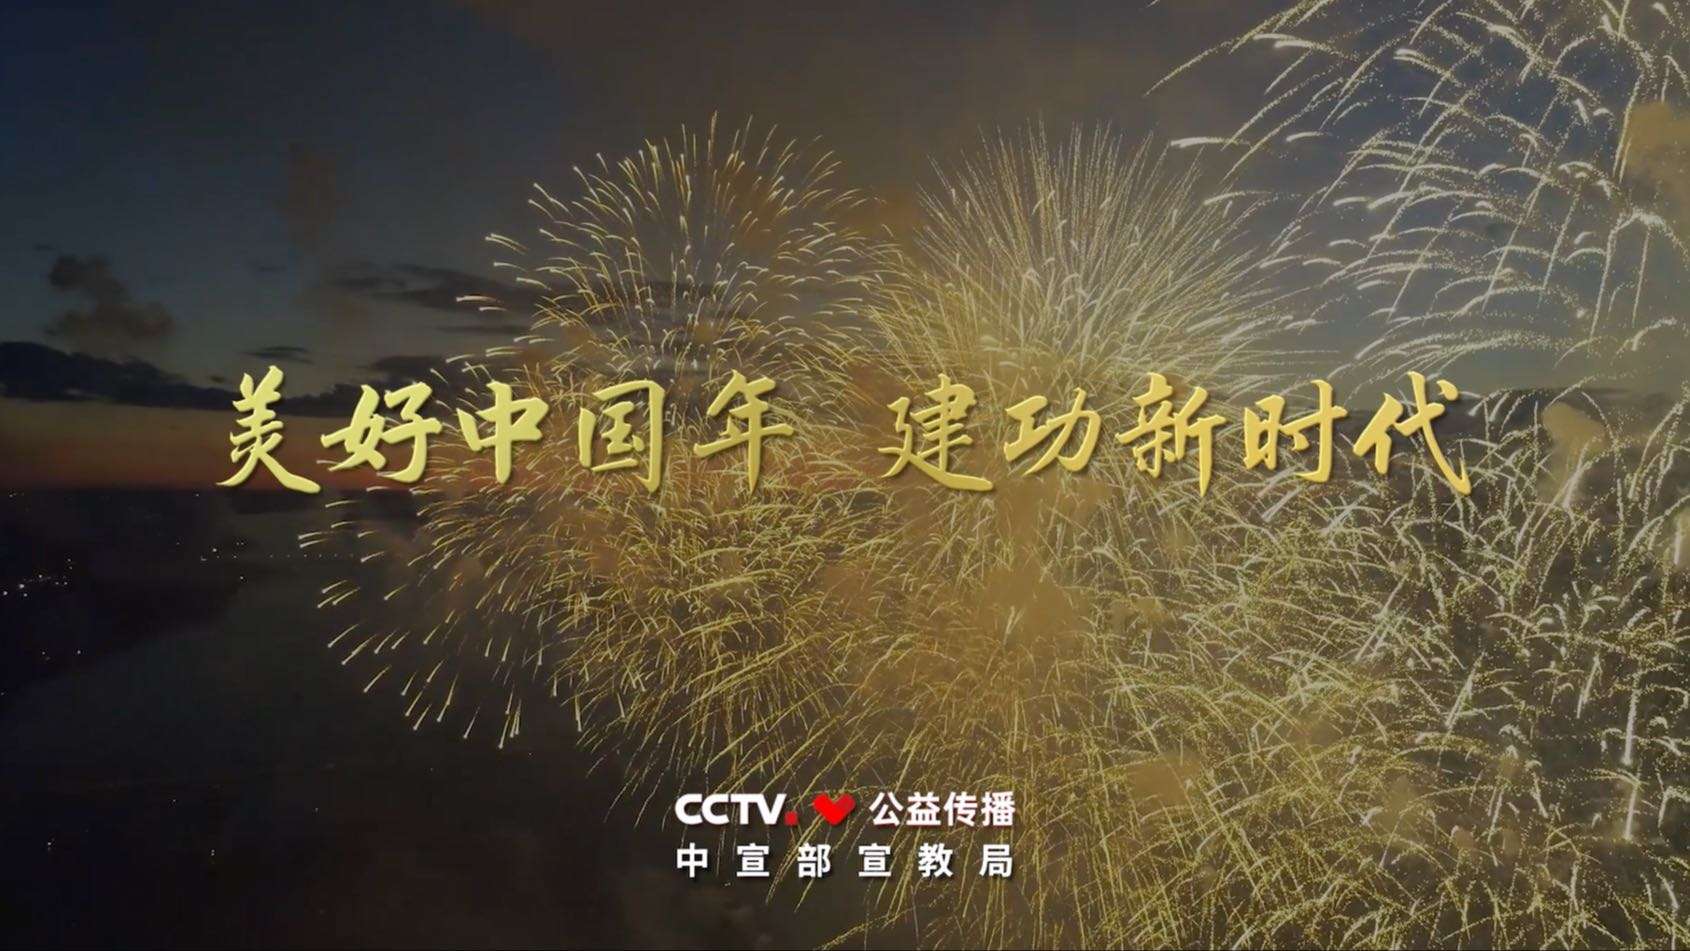 2022年央视公益广告《美好中国年 建功新时代》